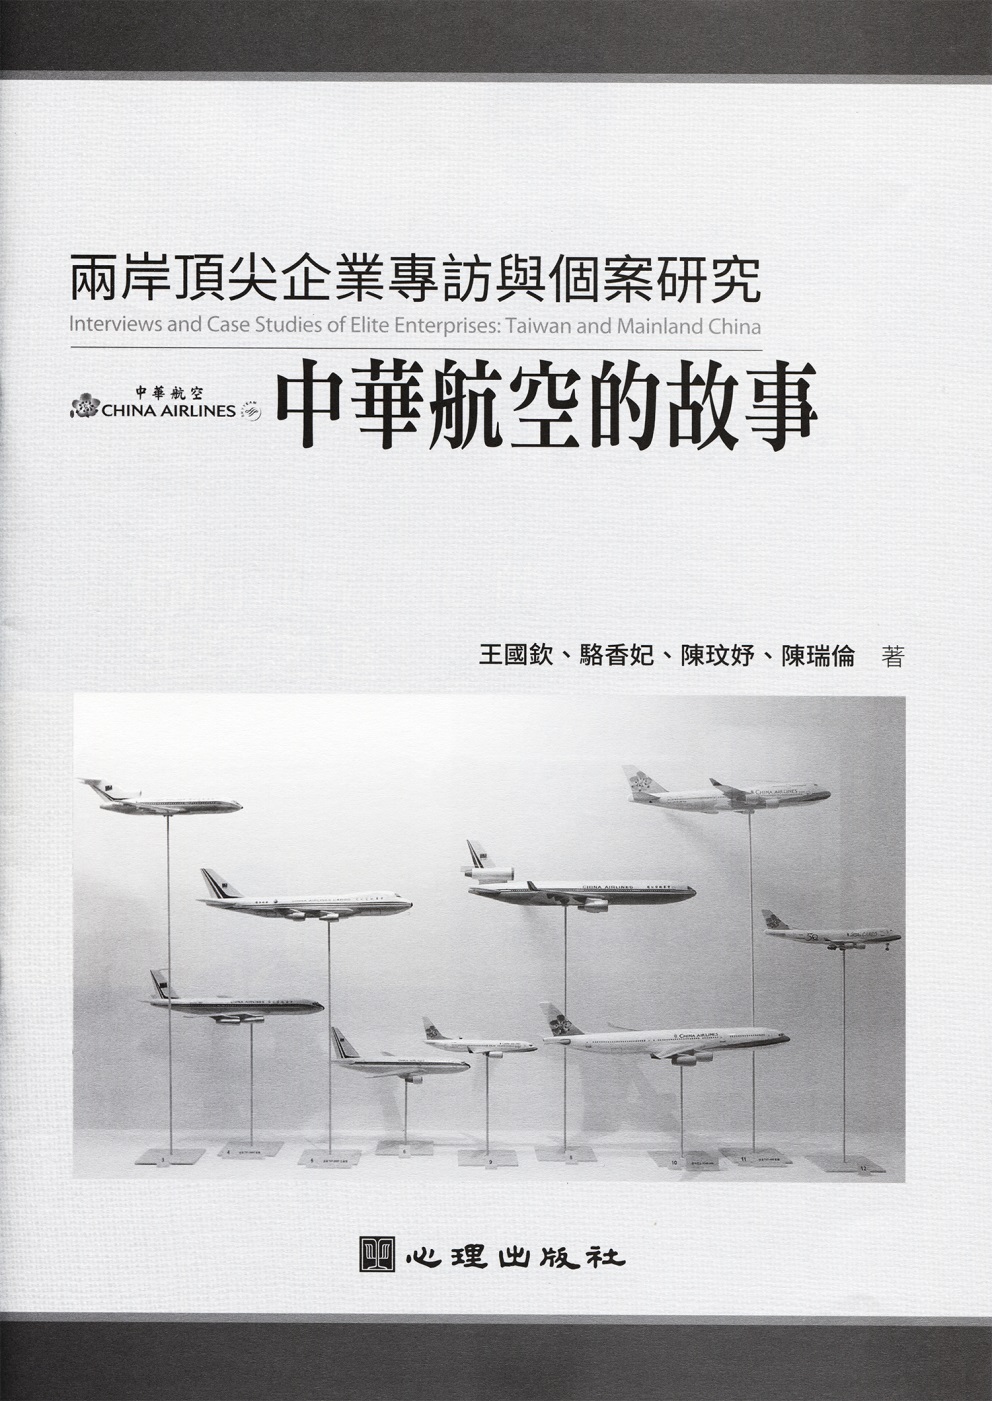 兩岸頂尖企業專訪與個案研究：中華航空的故事